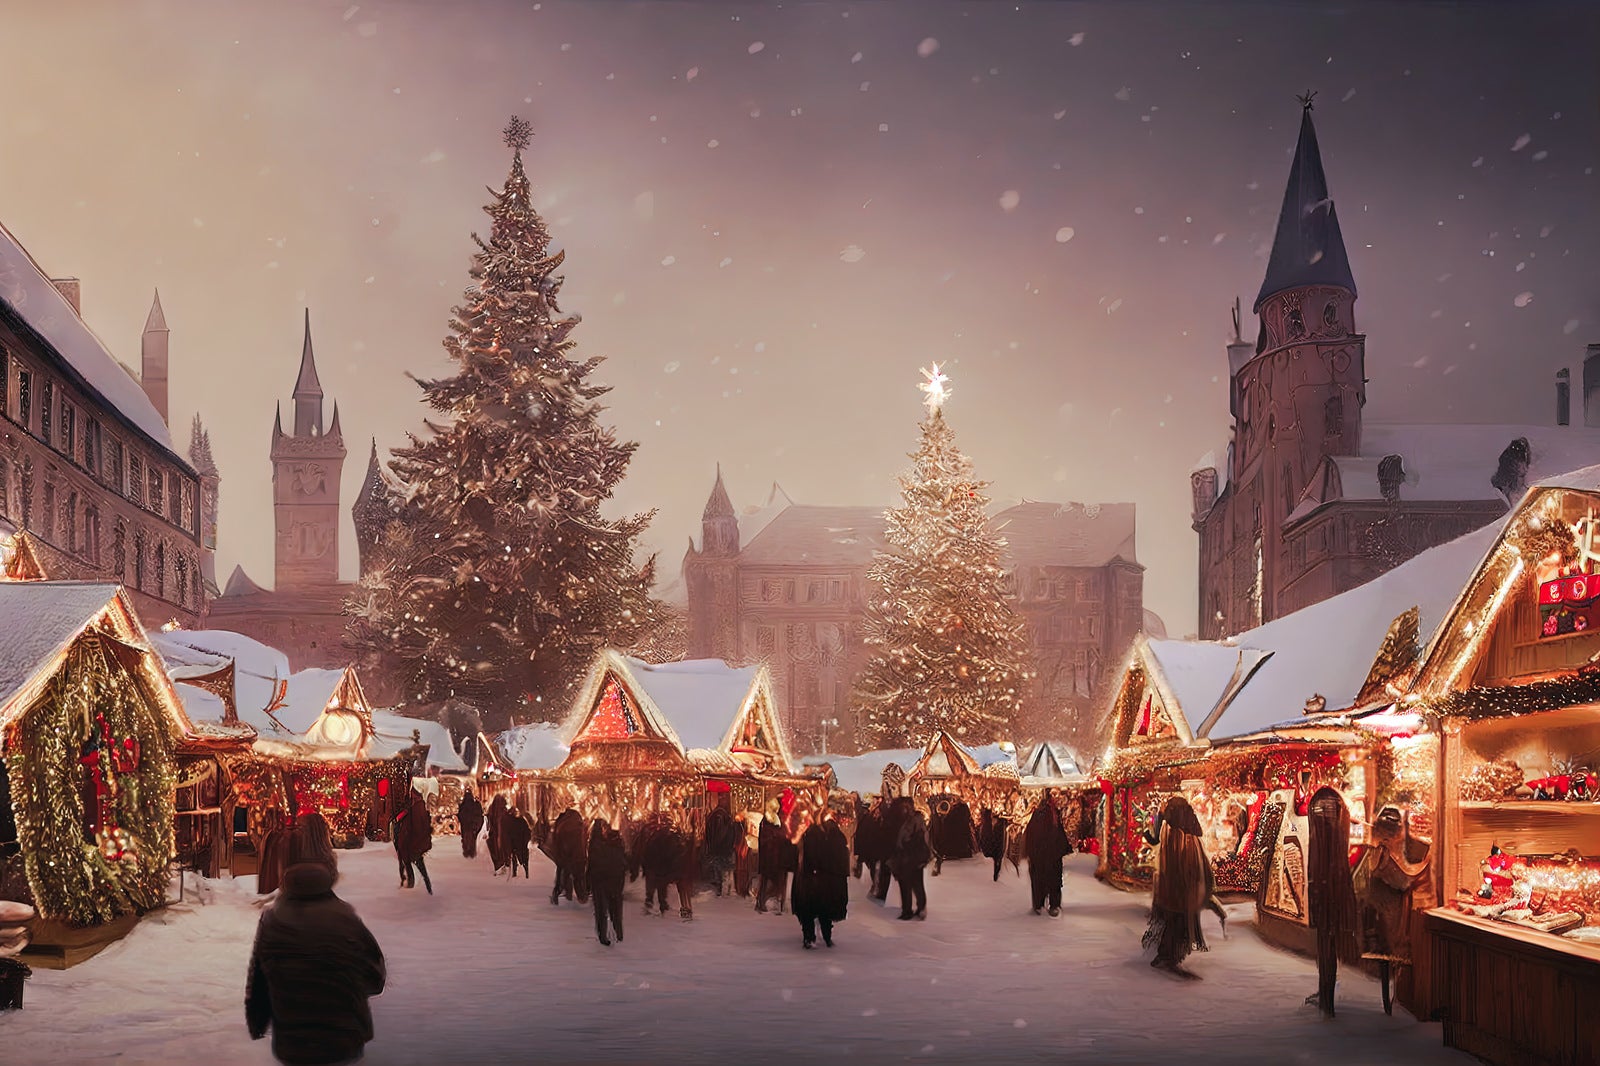 「クリスマスムードの街並み」の写真